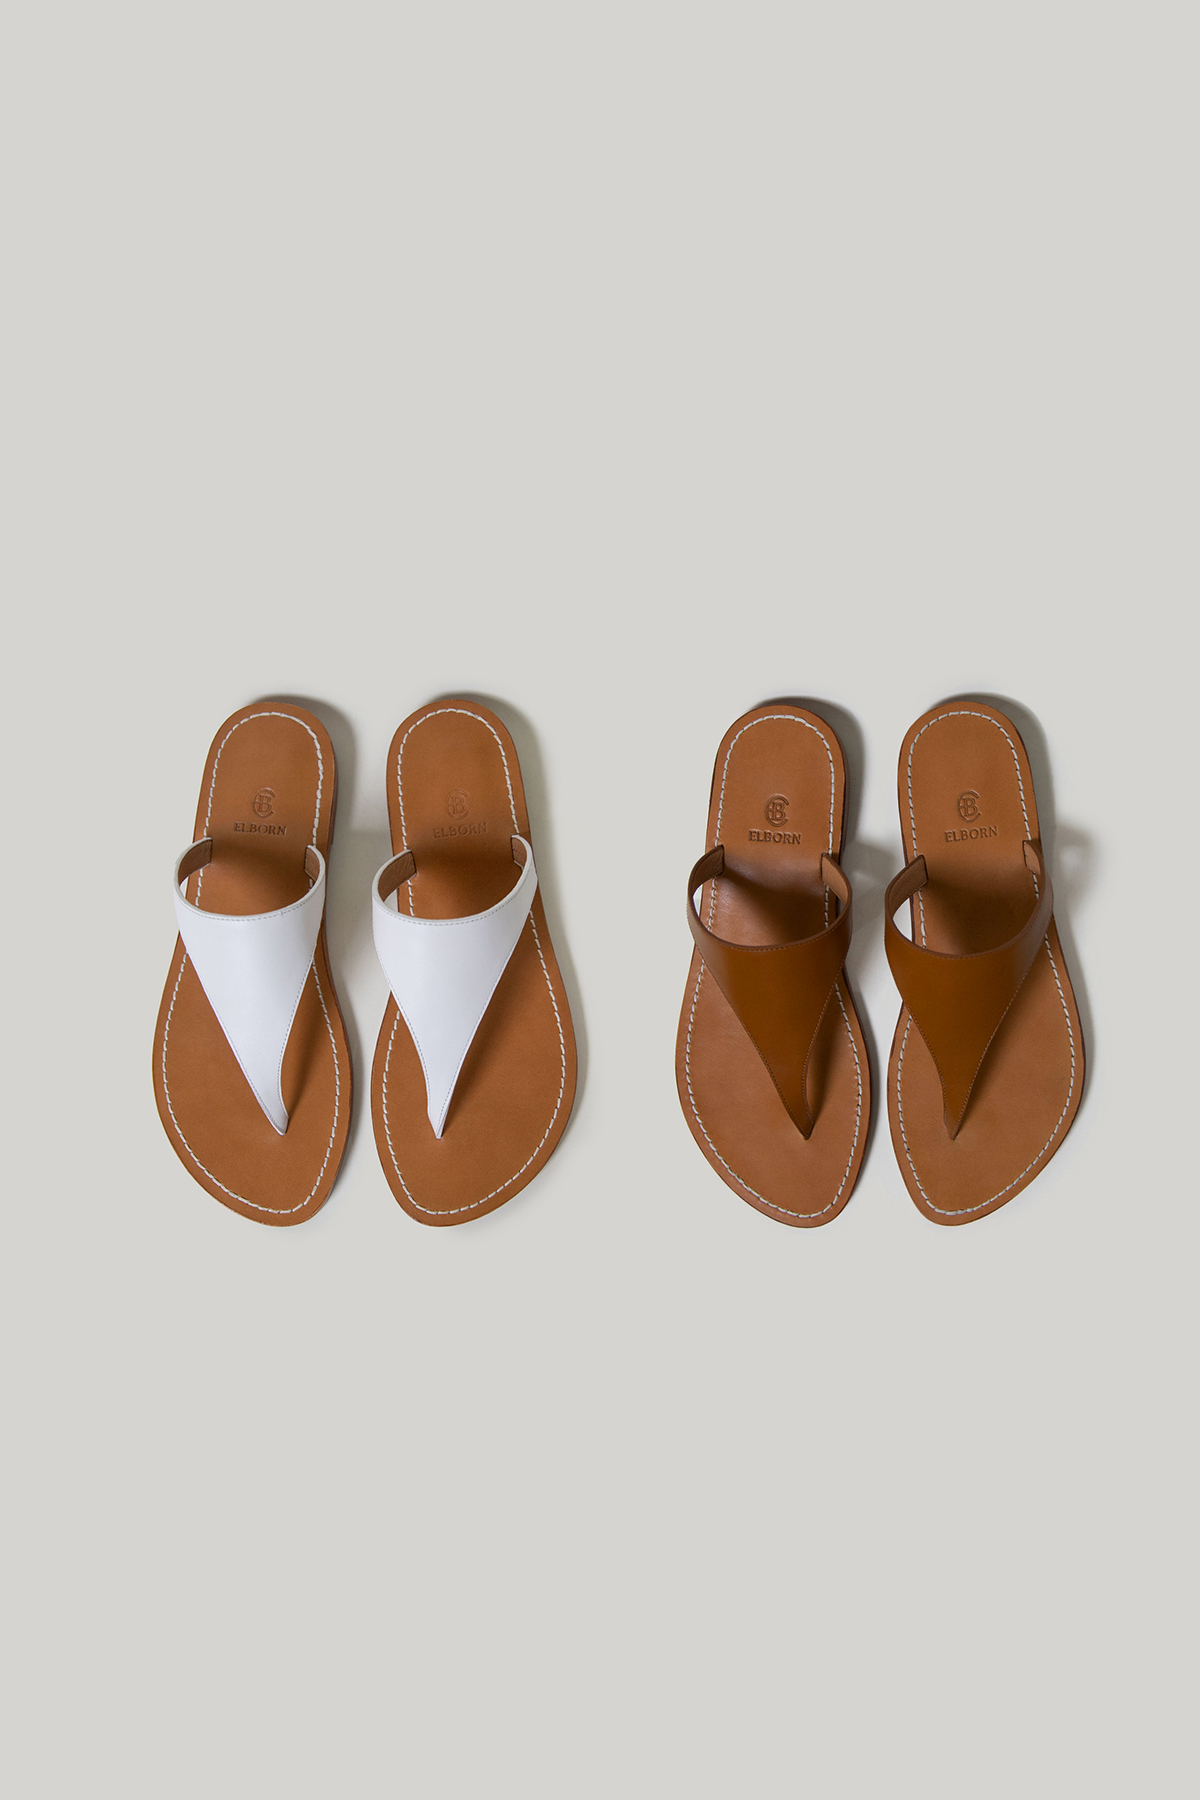 [2개 이상 구매창] Tov Leather Sandals (2 colors) - 상시 5% 할인